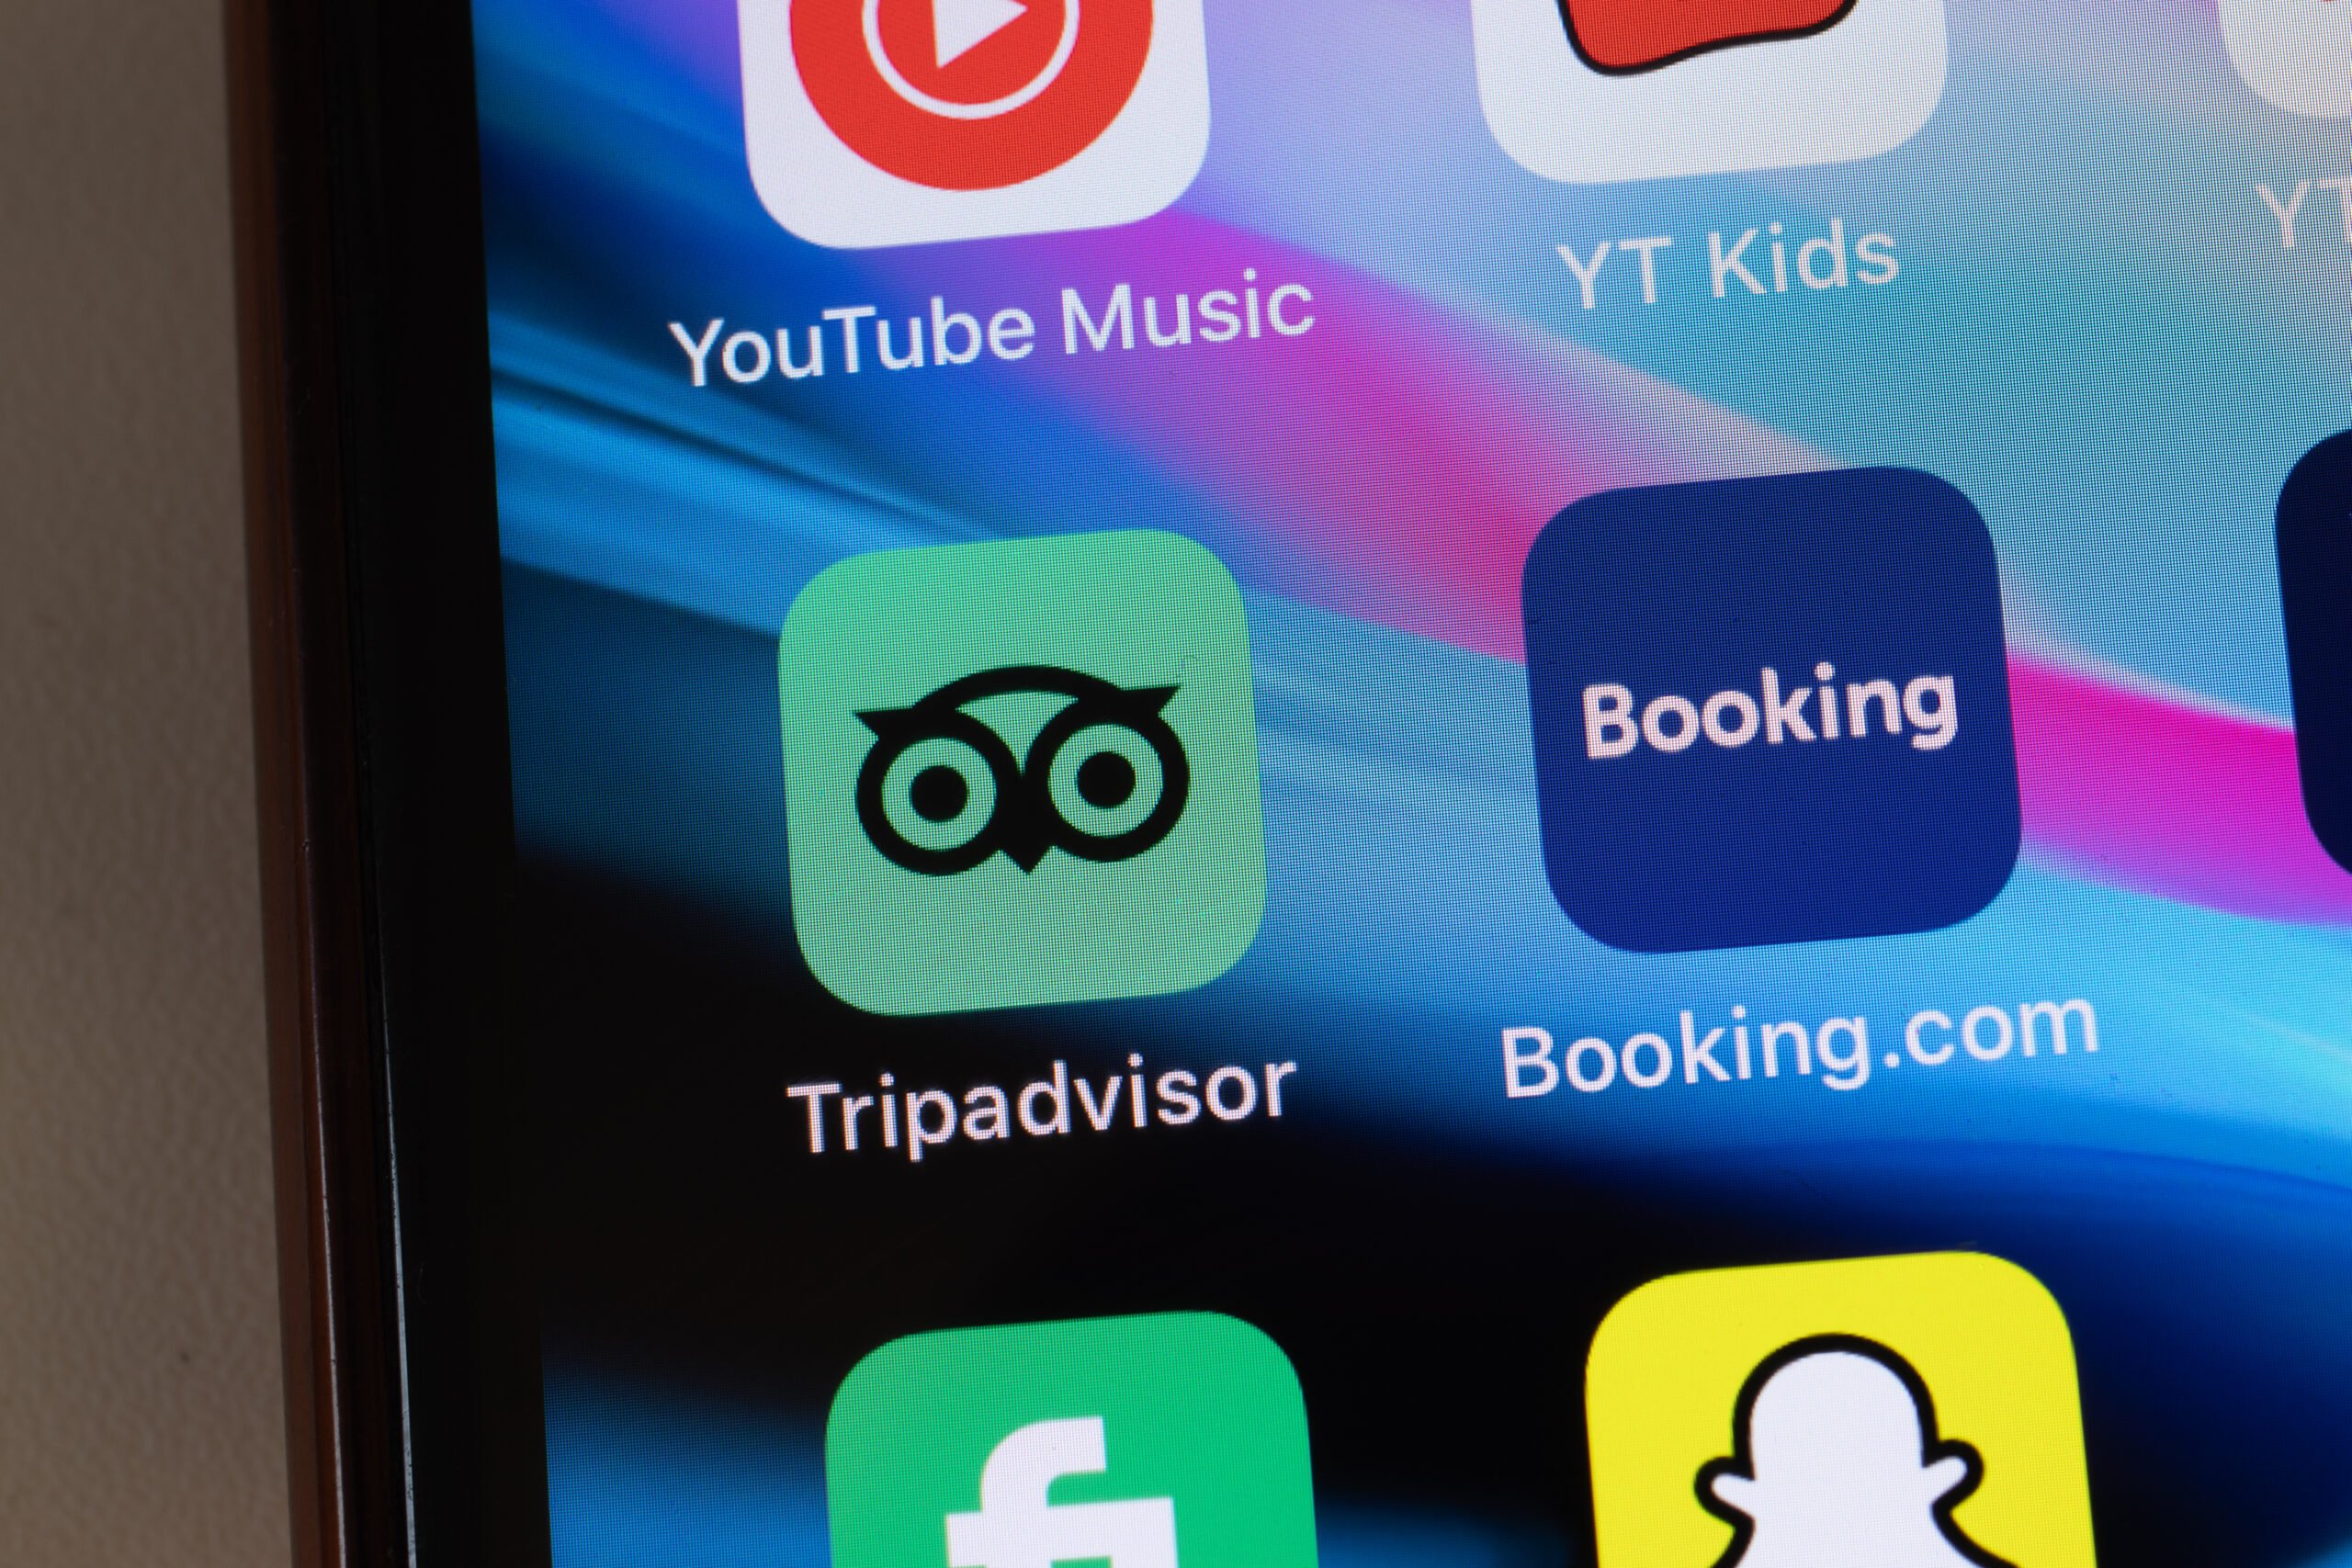 Ekran telefonu z ikonami aplikacji, w tym TripAdvisor, Booking.com, YouTube Music, YT Kids i Snapchat.